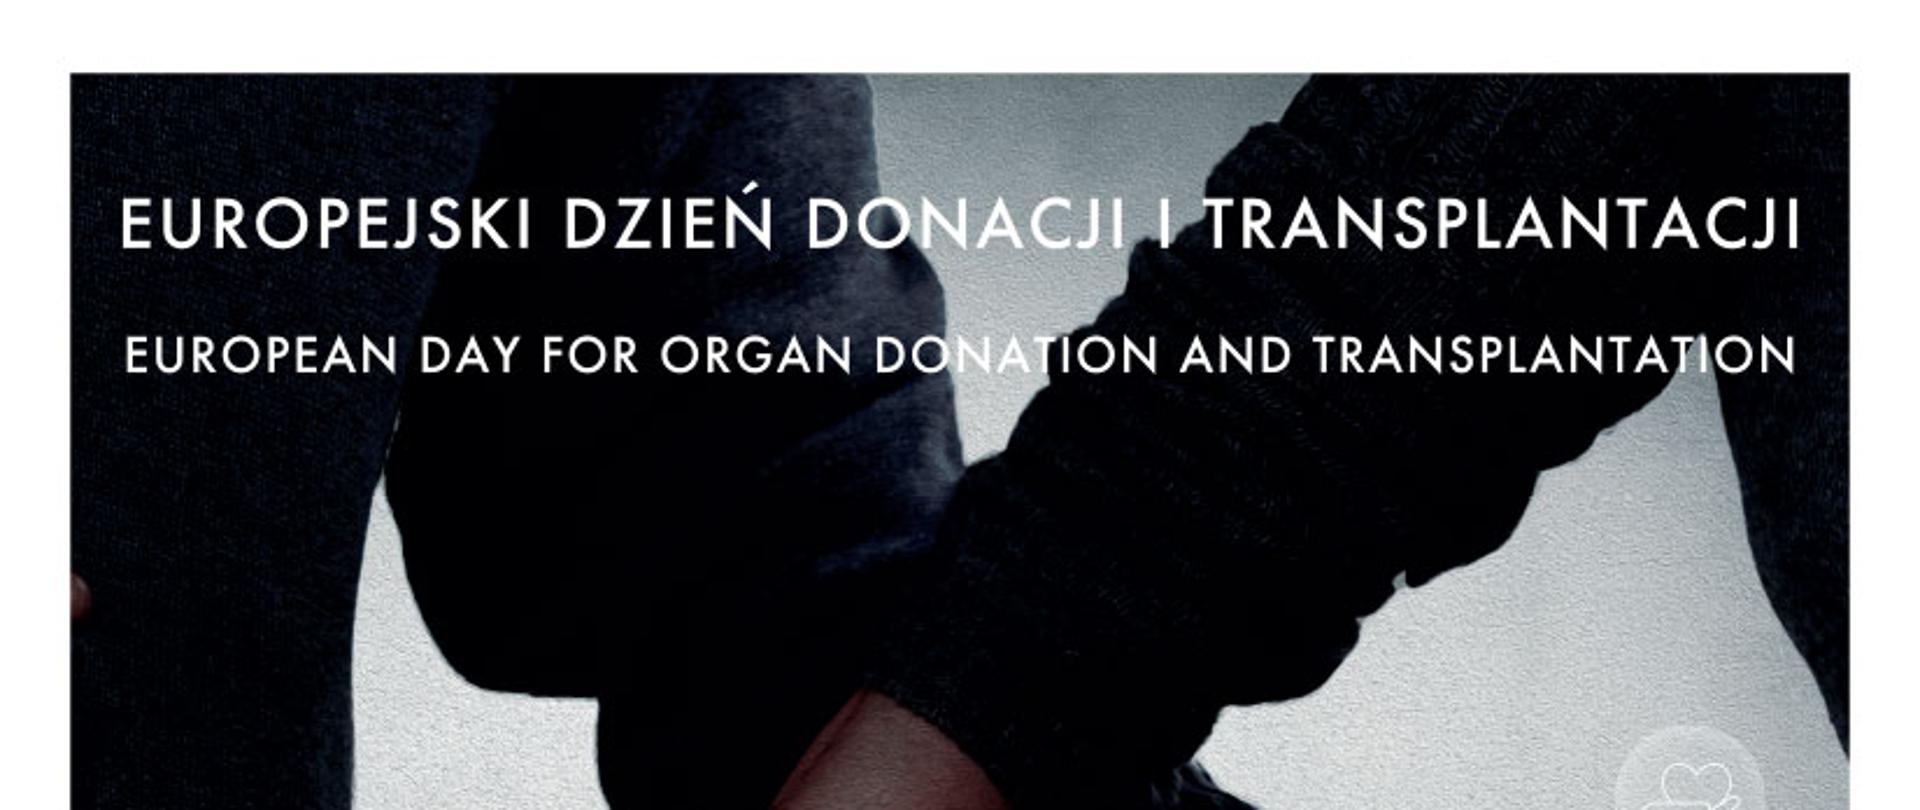 baner informujący o Europejskim Dniu Donacji i Transplantacji